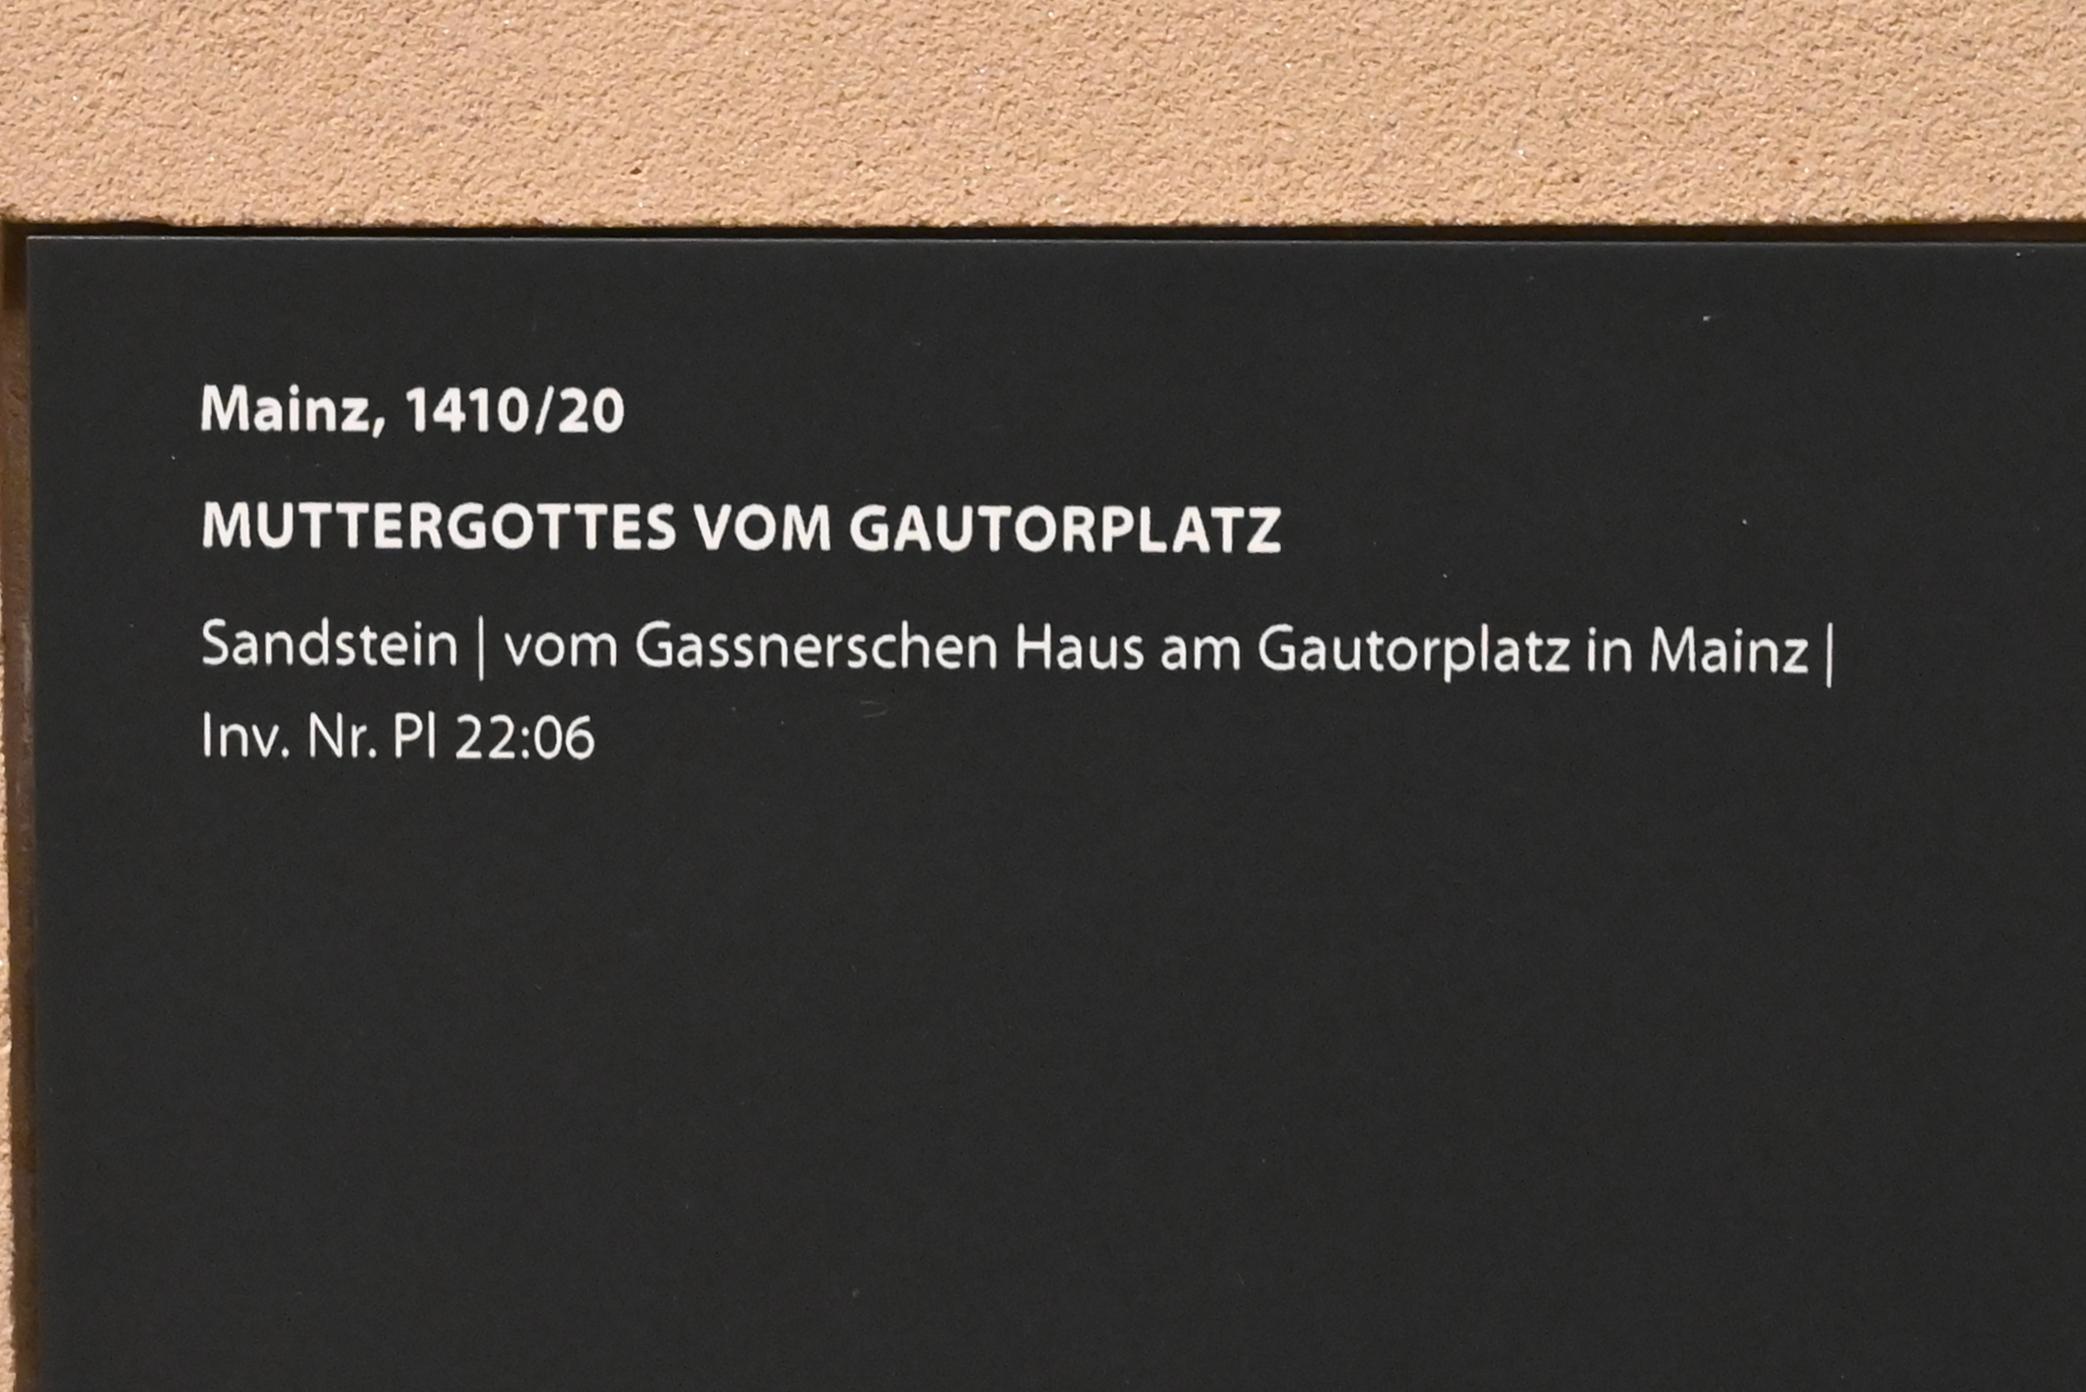 Muttergottes vom Gautorplatz, Mainz, Gassnersche Haus am Gautorplatz, jetzt Darmstadt, Hessisches Landesmuseum, Kunsthandwerk, 1410–1420, Bild 2/2